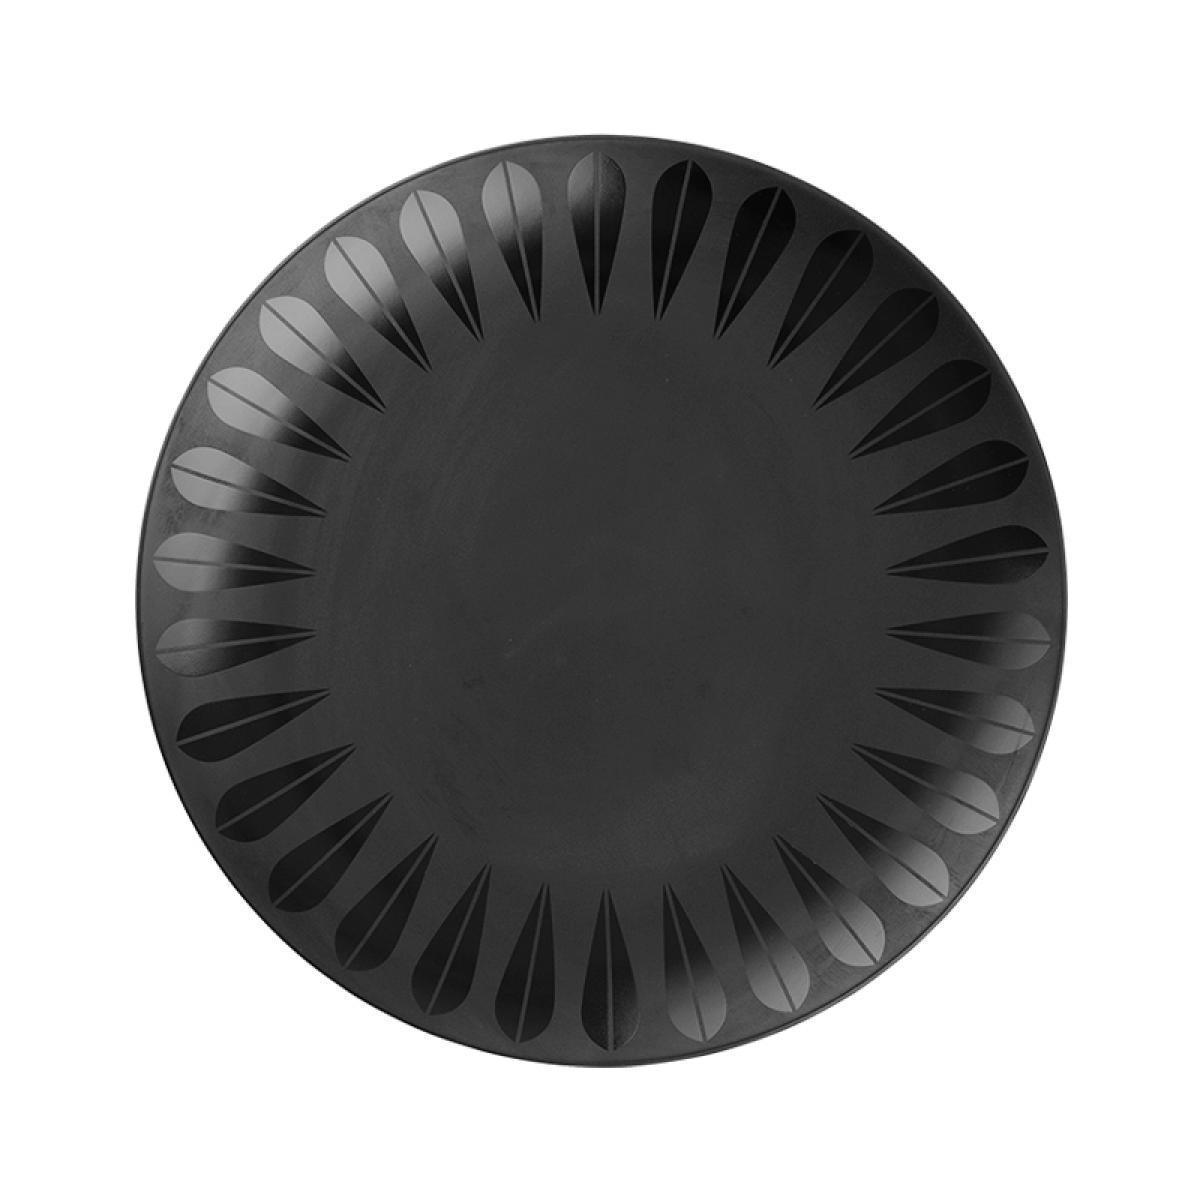 Lucie Kaas Arne Clausen Lotus Plate Black, 28cm